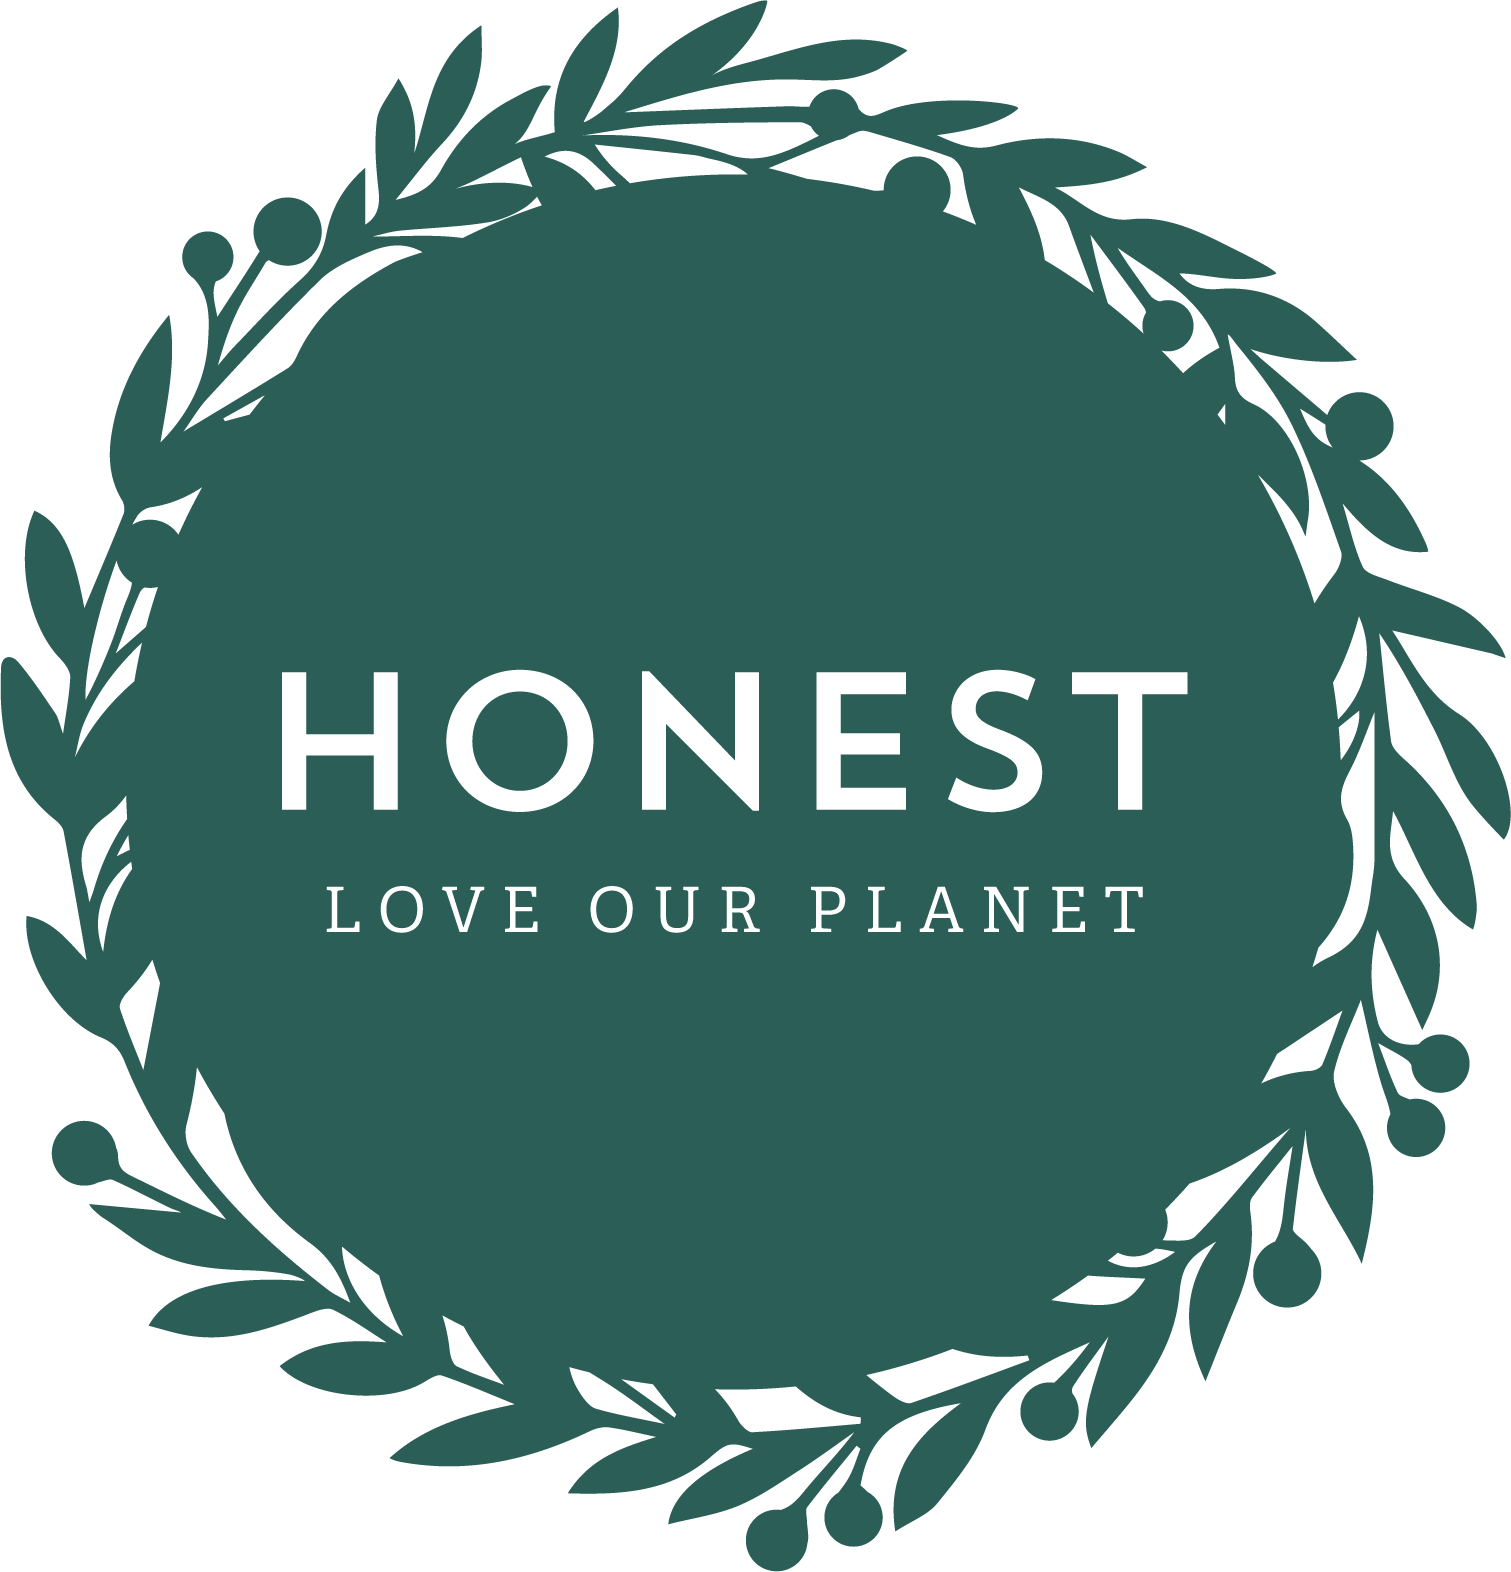 Honest - Love Our Planet Ltd